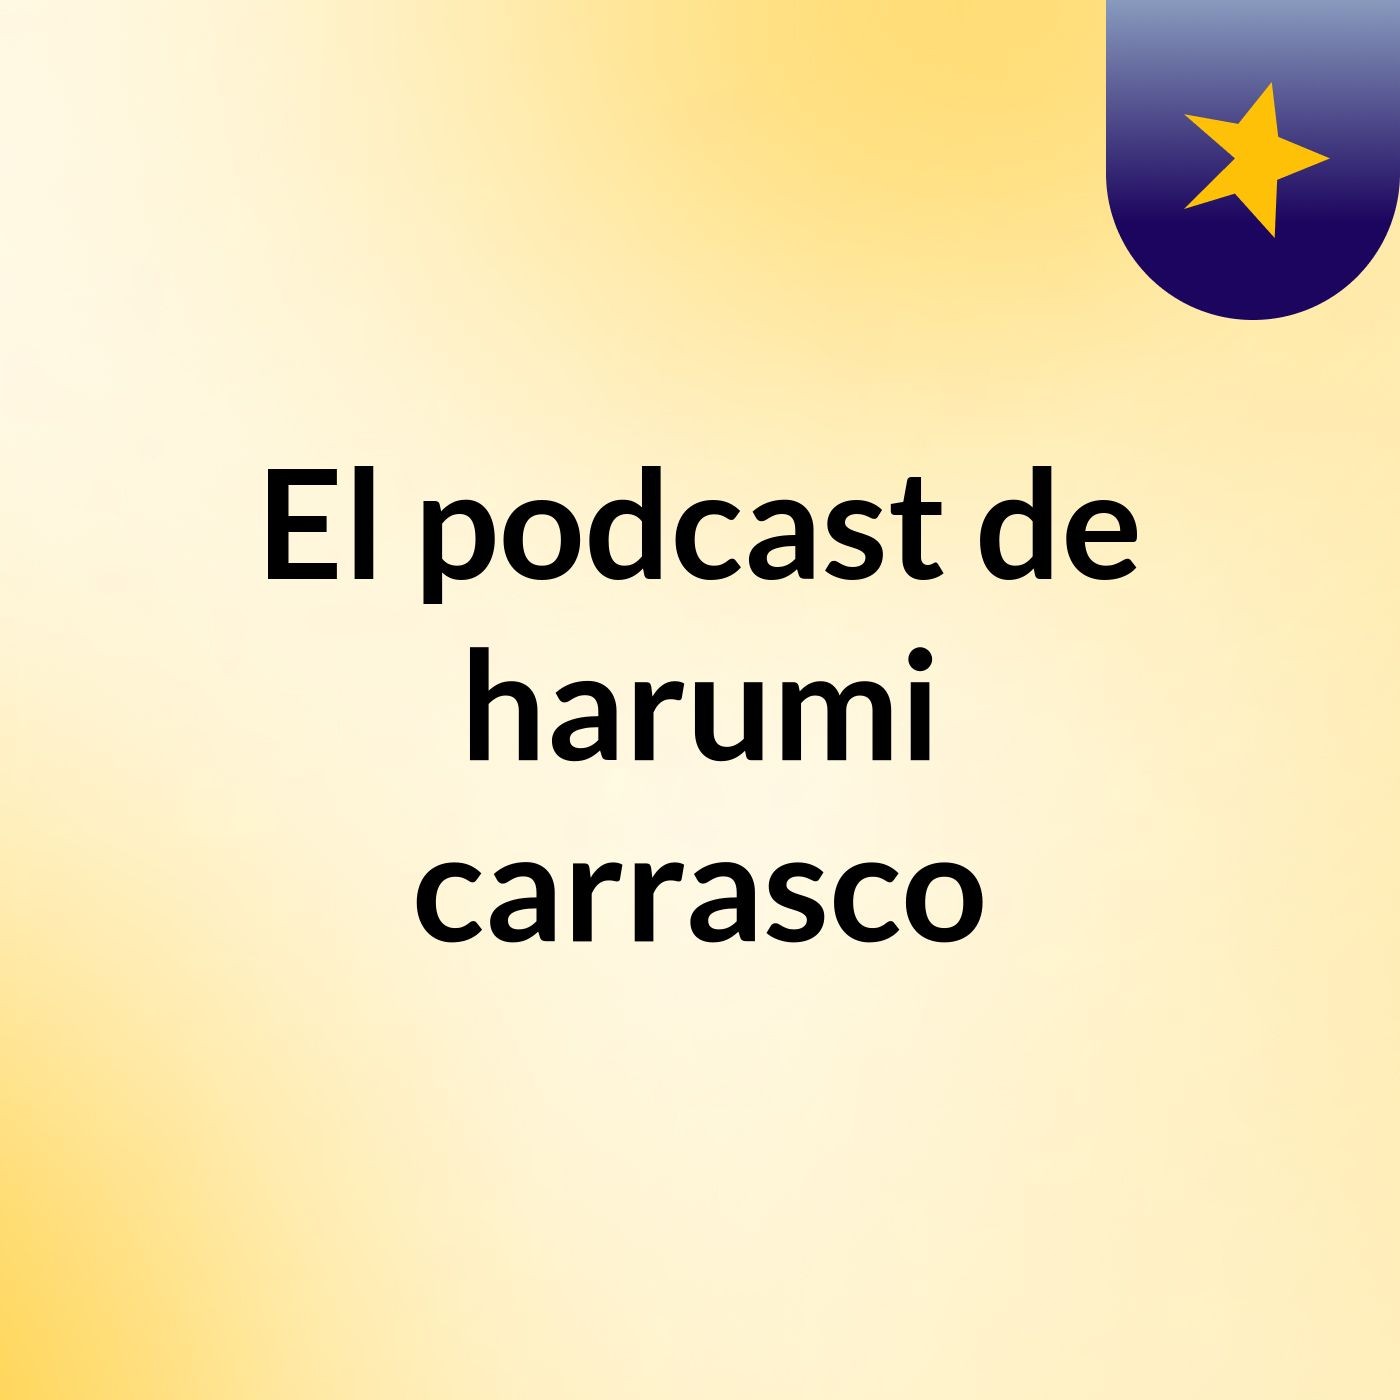 Episodio 3 - El podcast de harumi carrasco